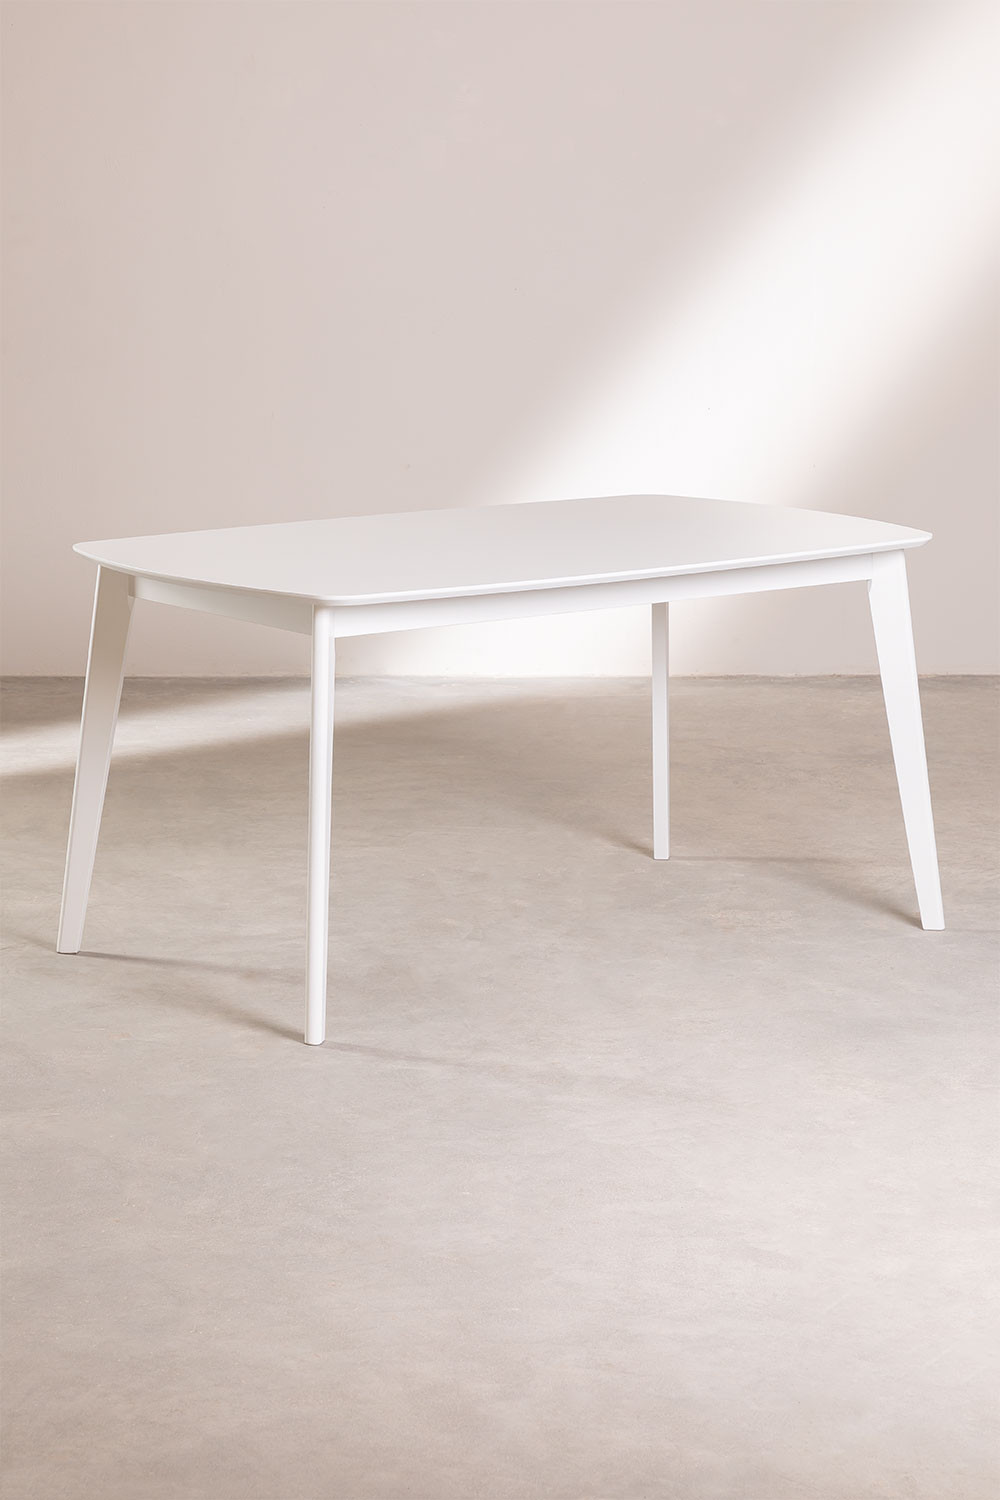 Table hévéa ove bois blanc 150cm